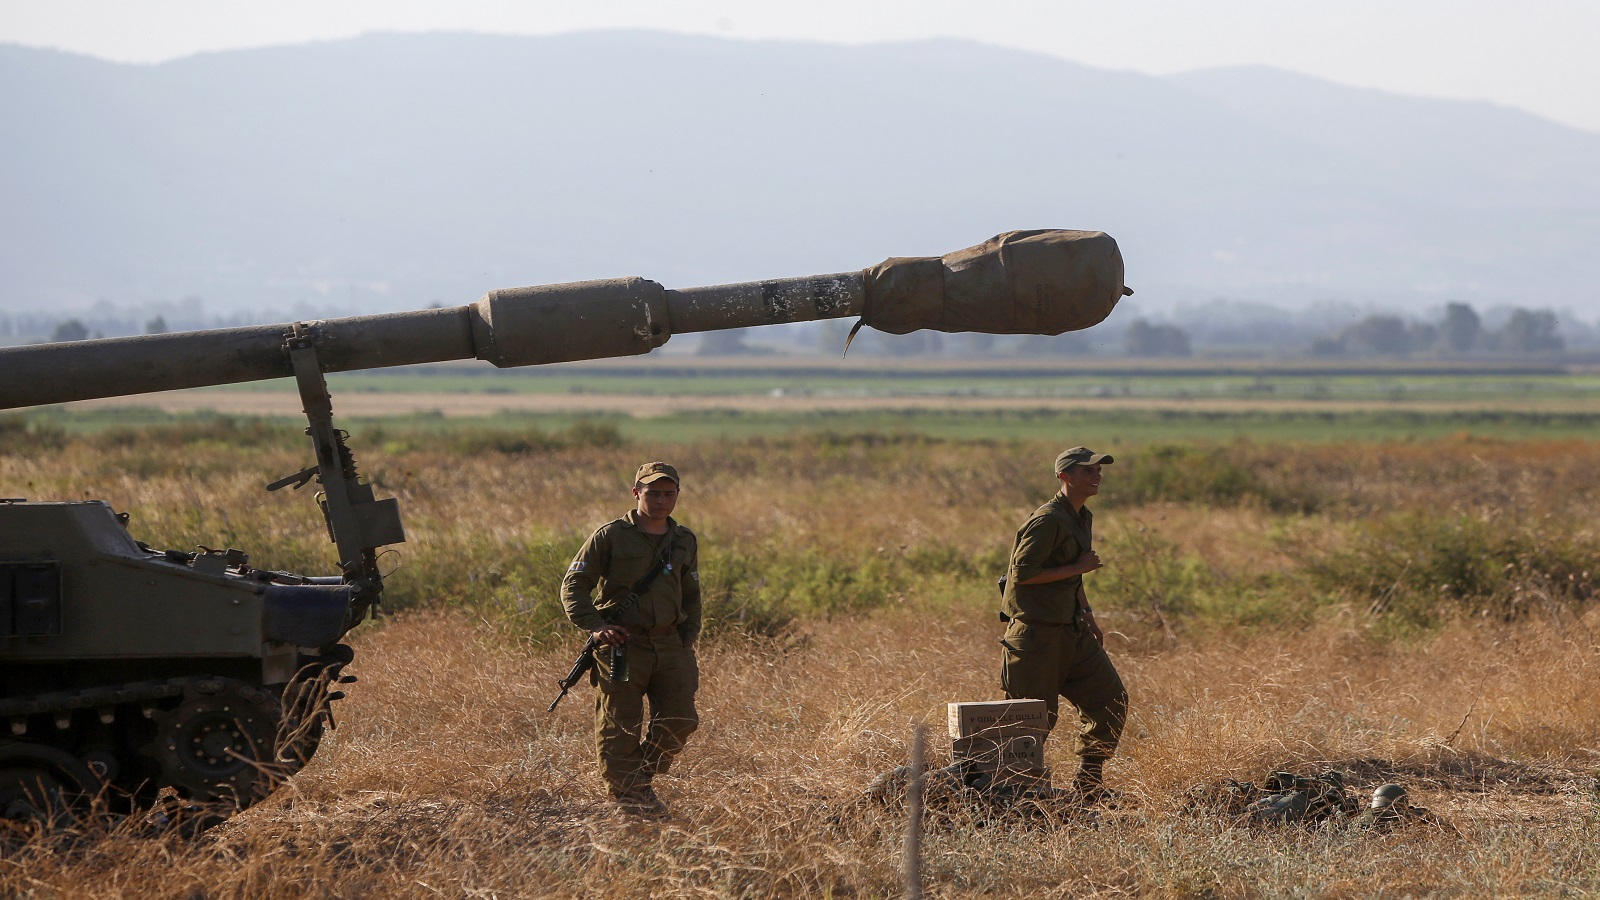 إسرائيل أكثر ميلاً للحرب ..بعد تأجيلها ؟